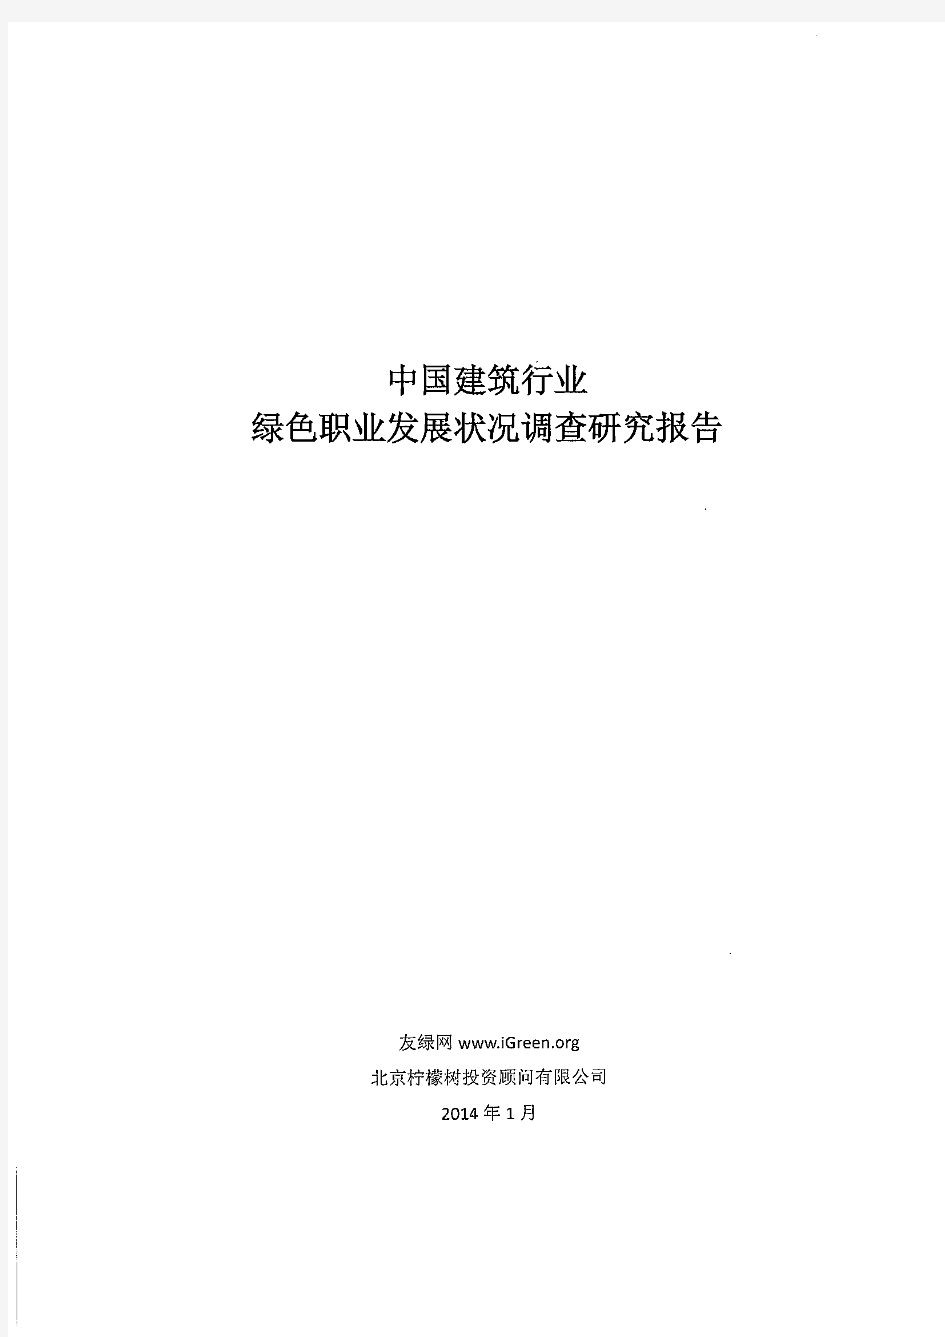 中国建筑行业绿色职业发展状况调查研究报告